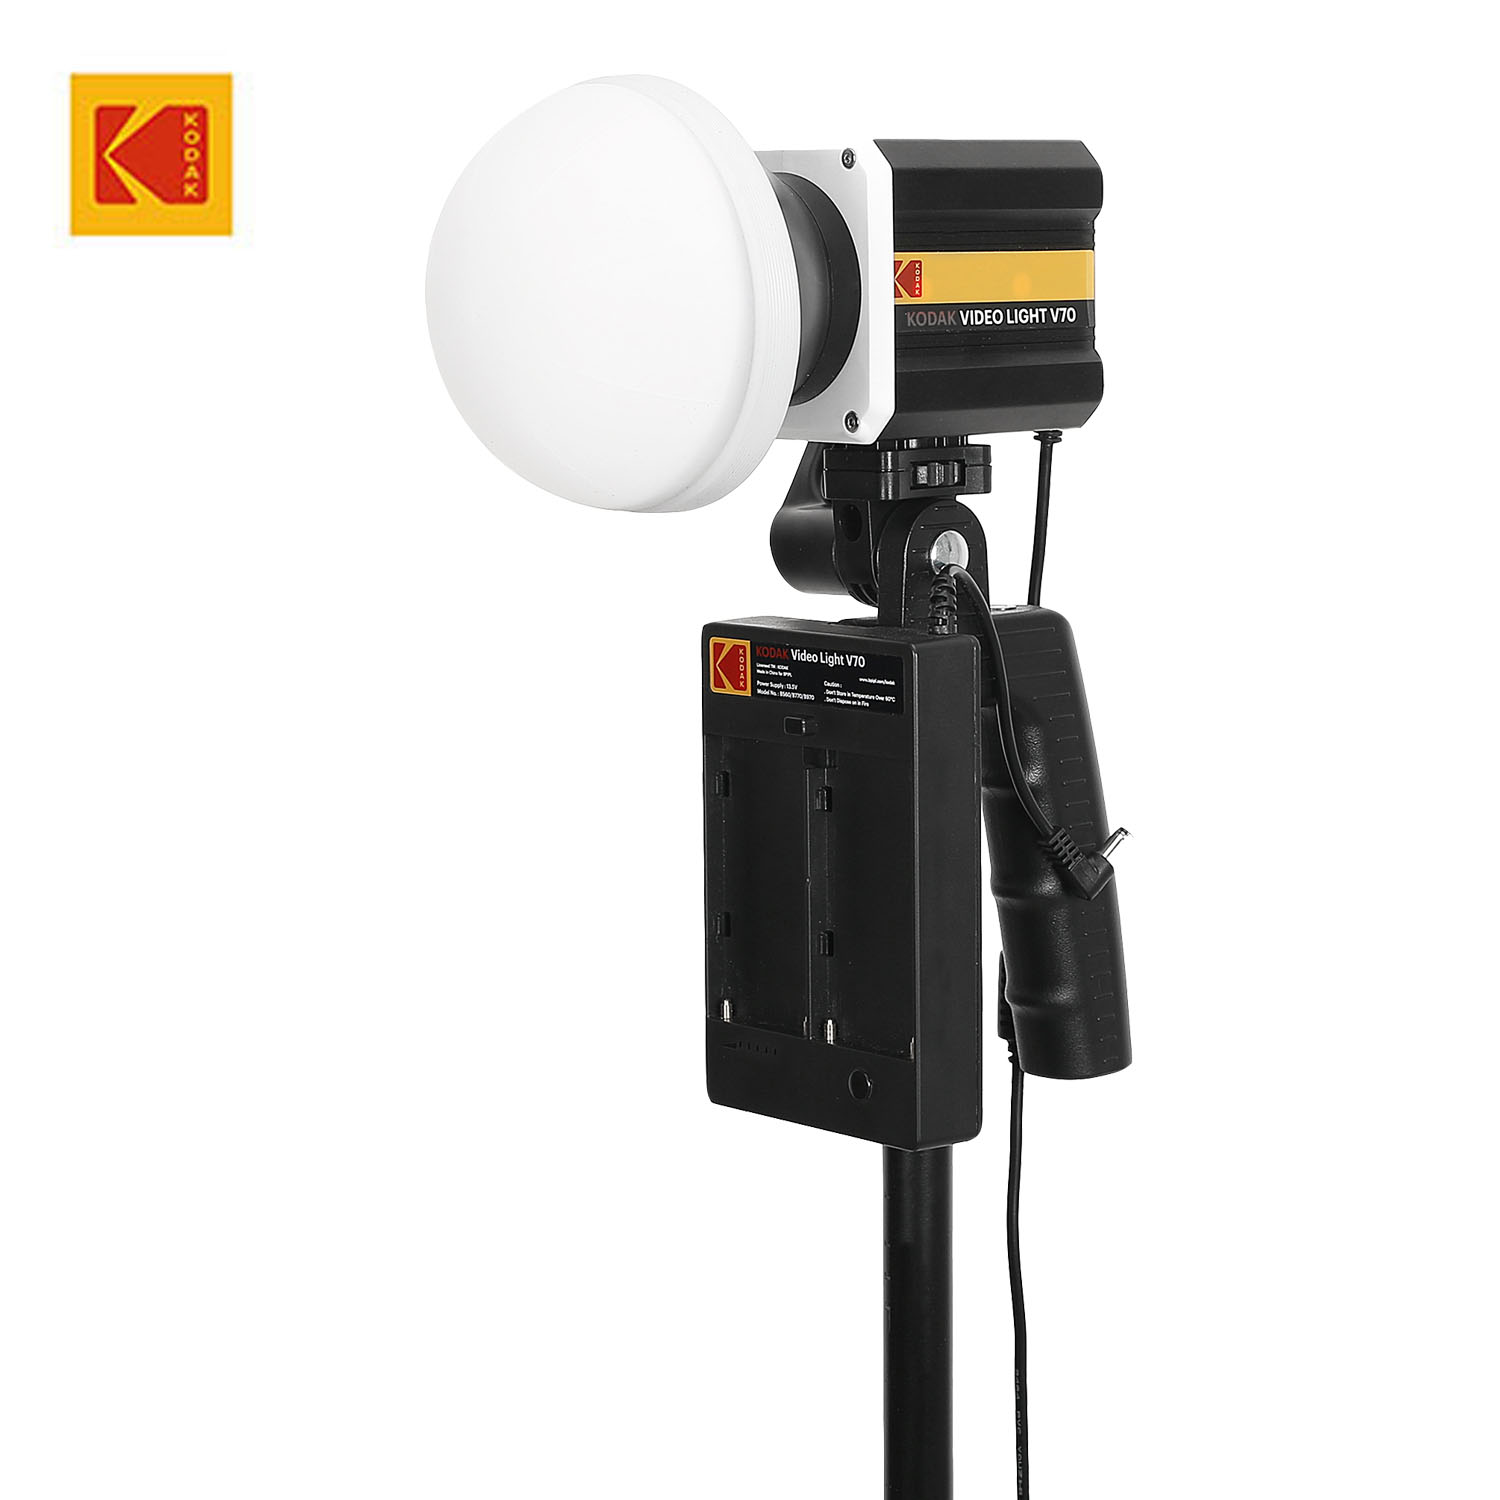 KODAK Video Light V70